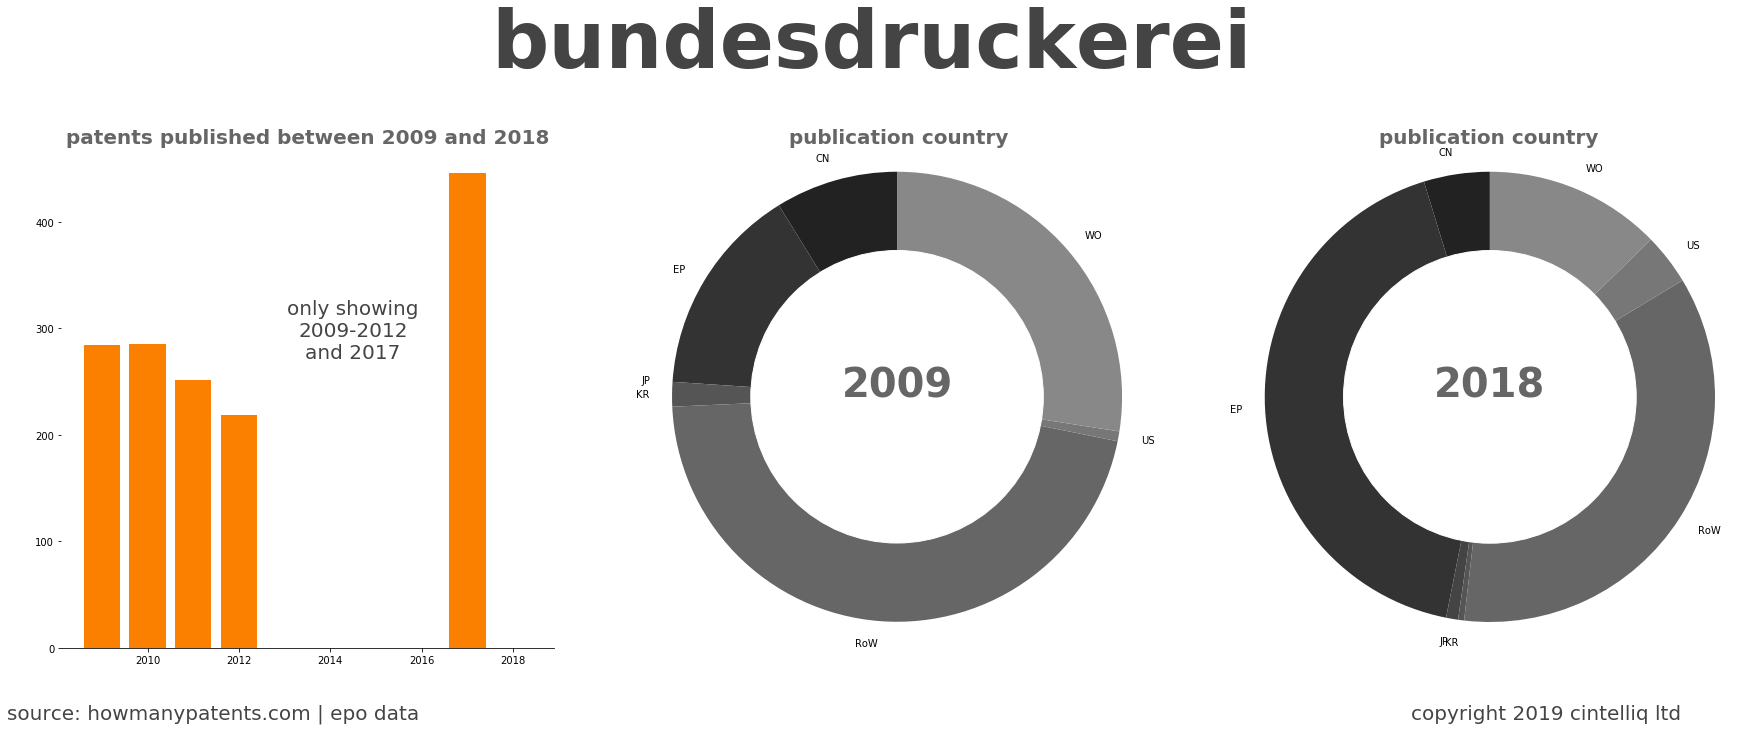 summary of patents for Bundesdruckerei